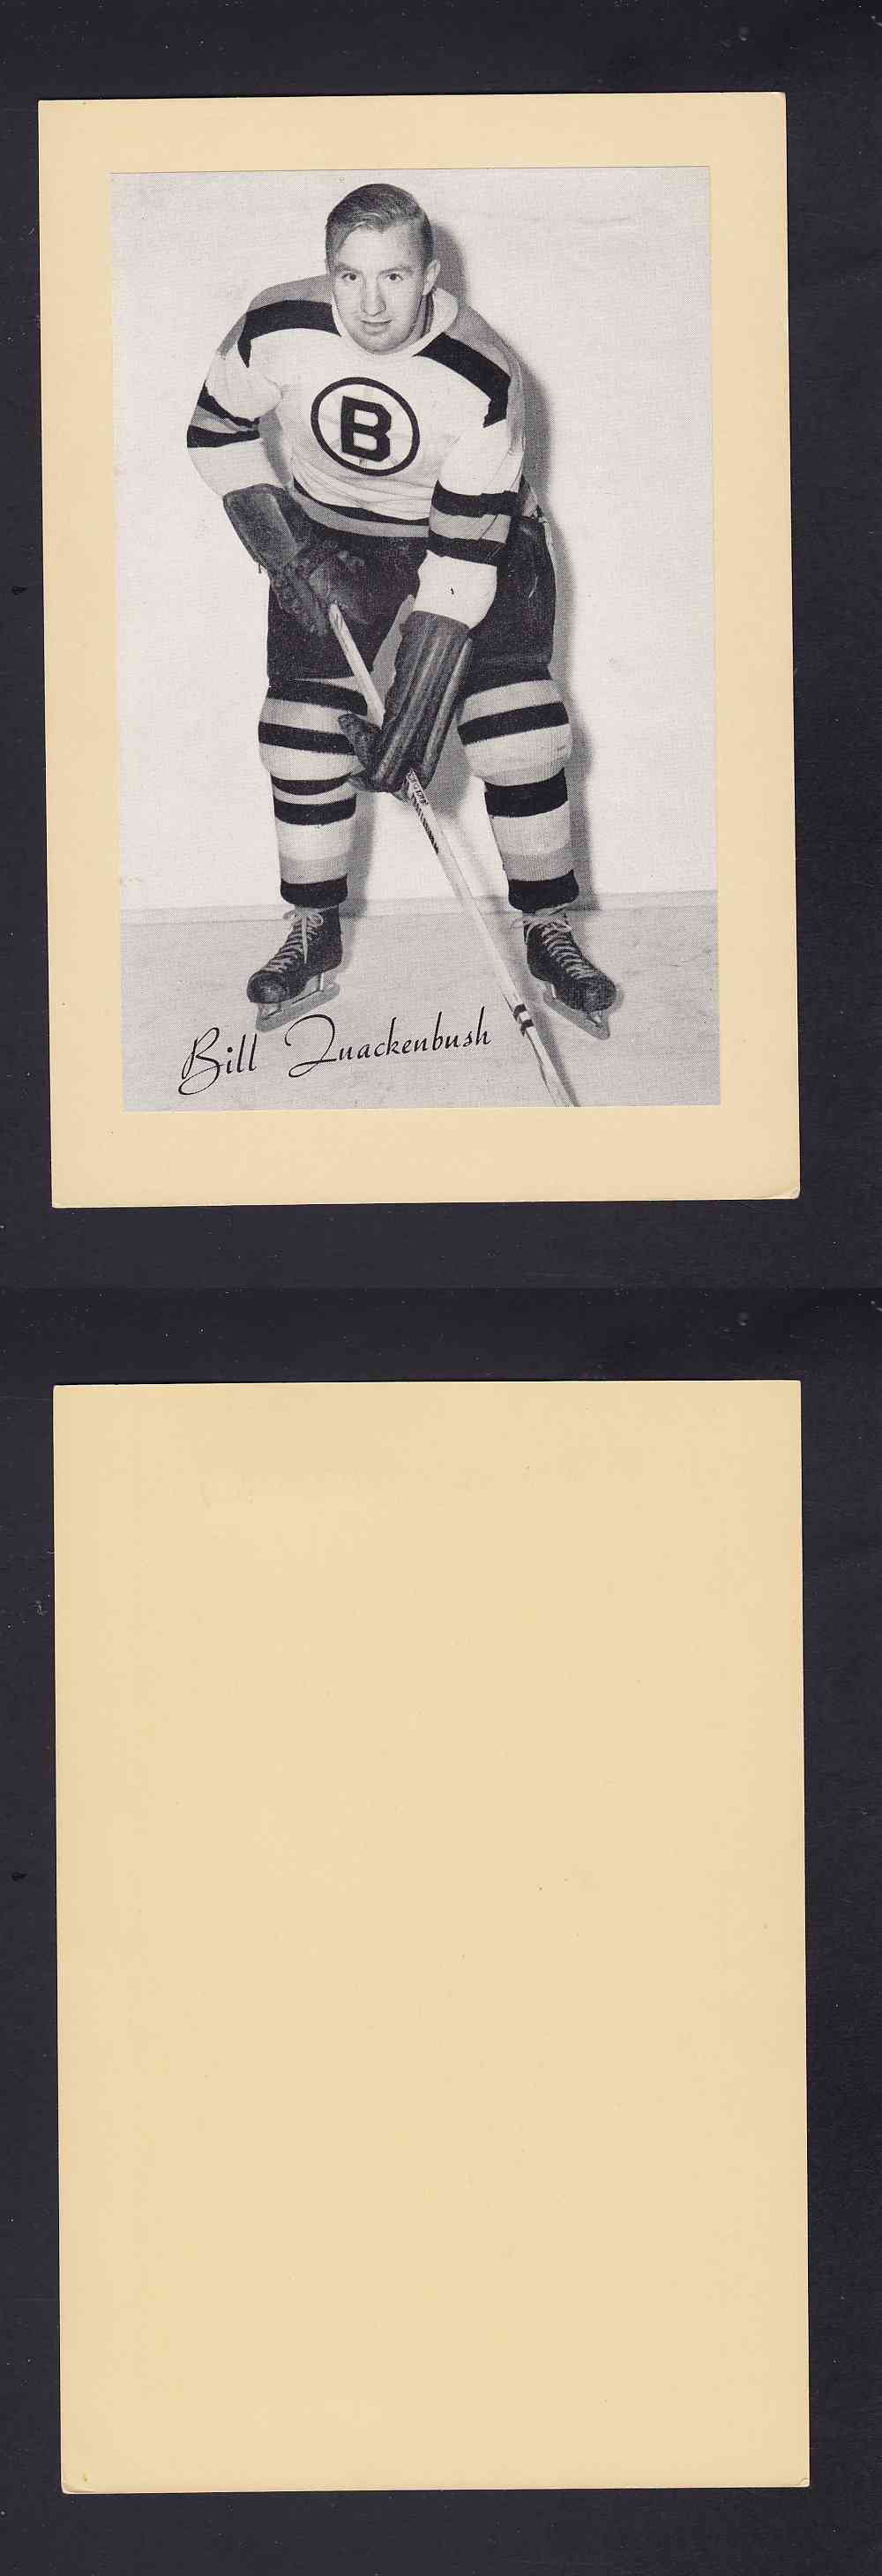 1945-64 BEEHIVE PHOTO GR.2 B. QUACKENBUSH photo